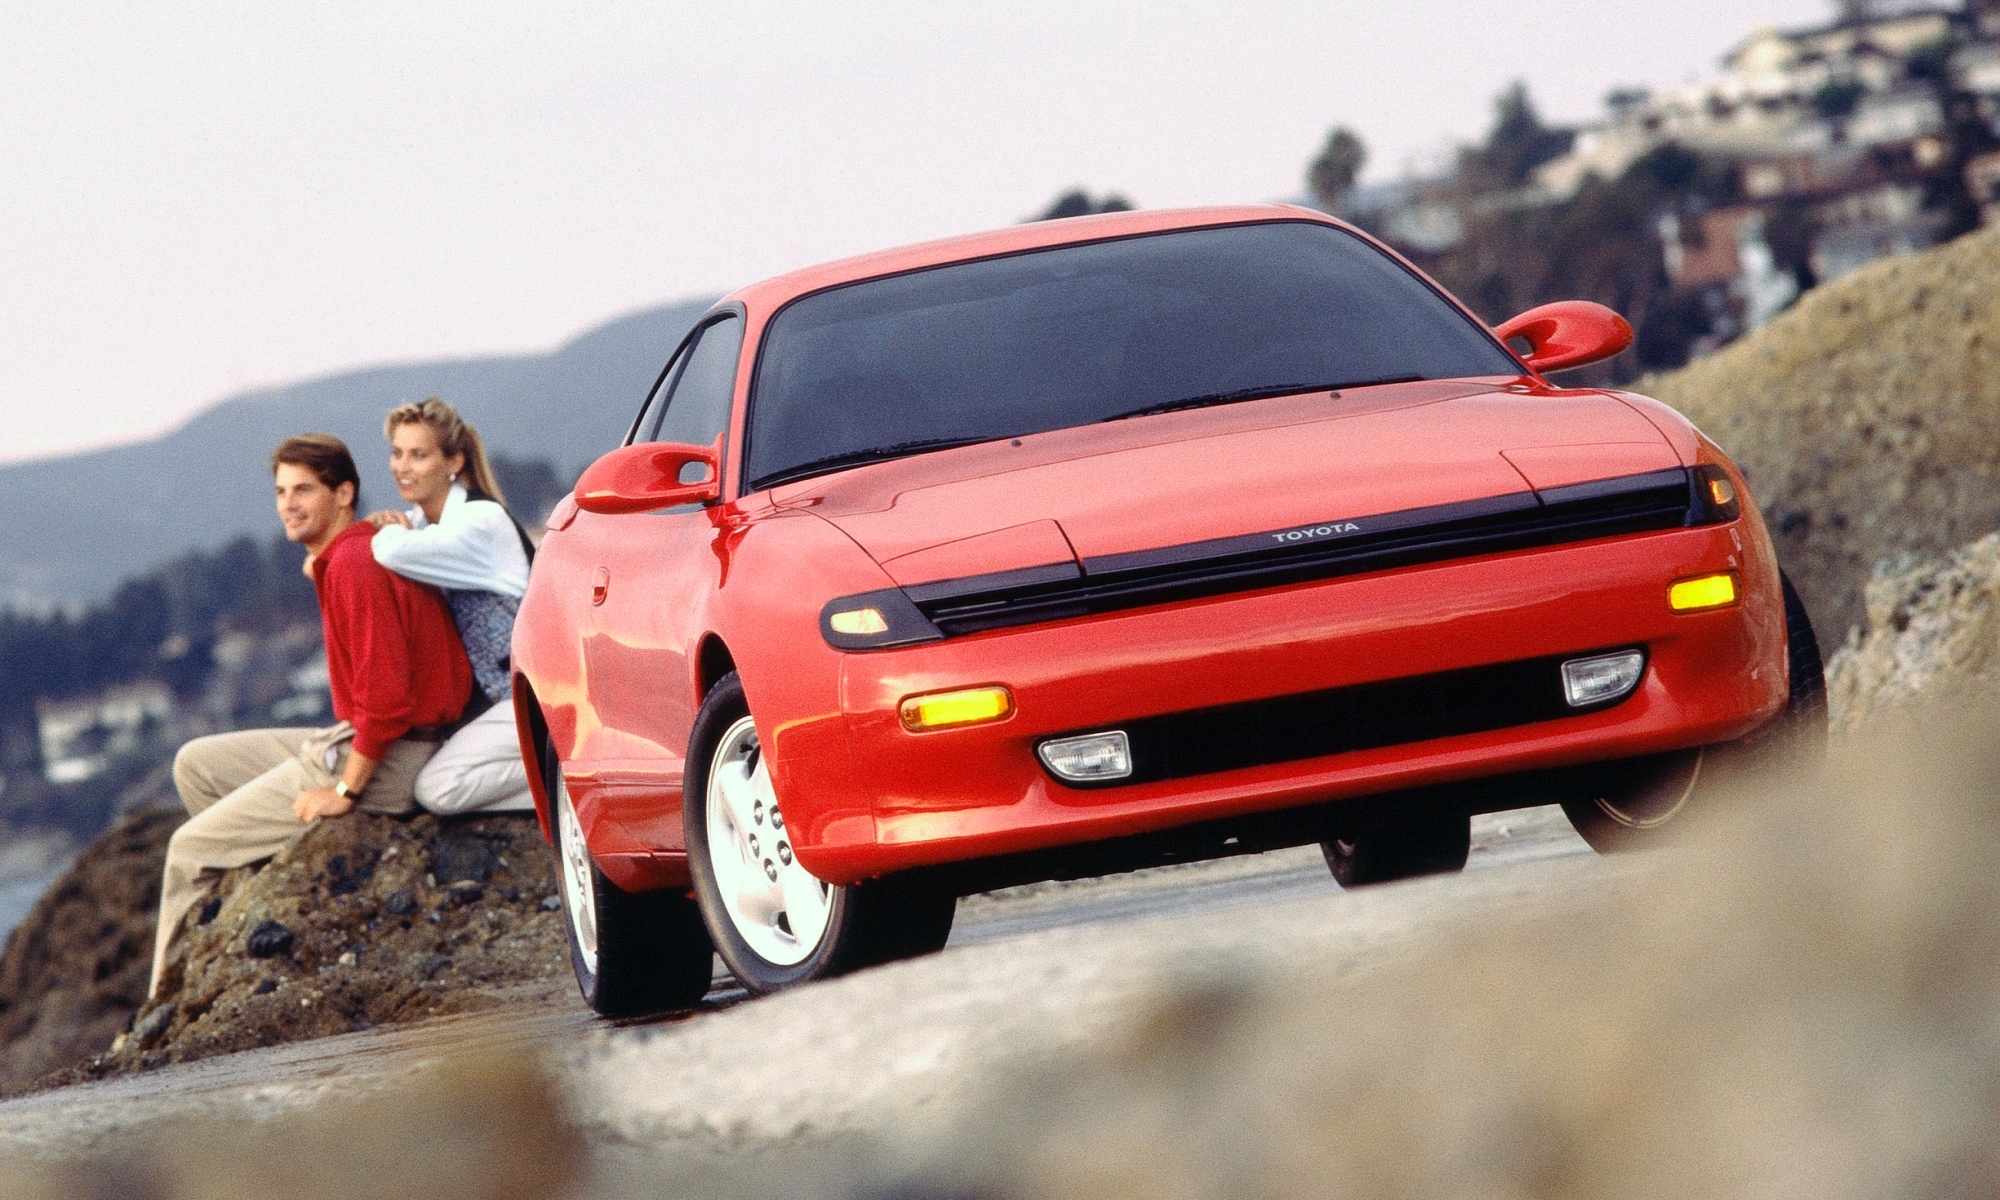 El Toyota Celica es uno de los coches más famosos de la historia con varias generaciones de éxitos.